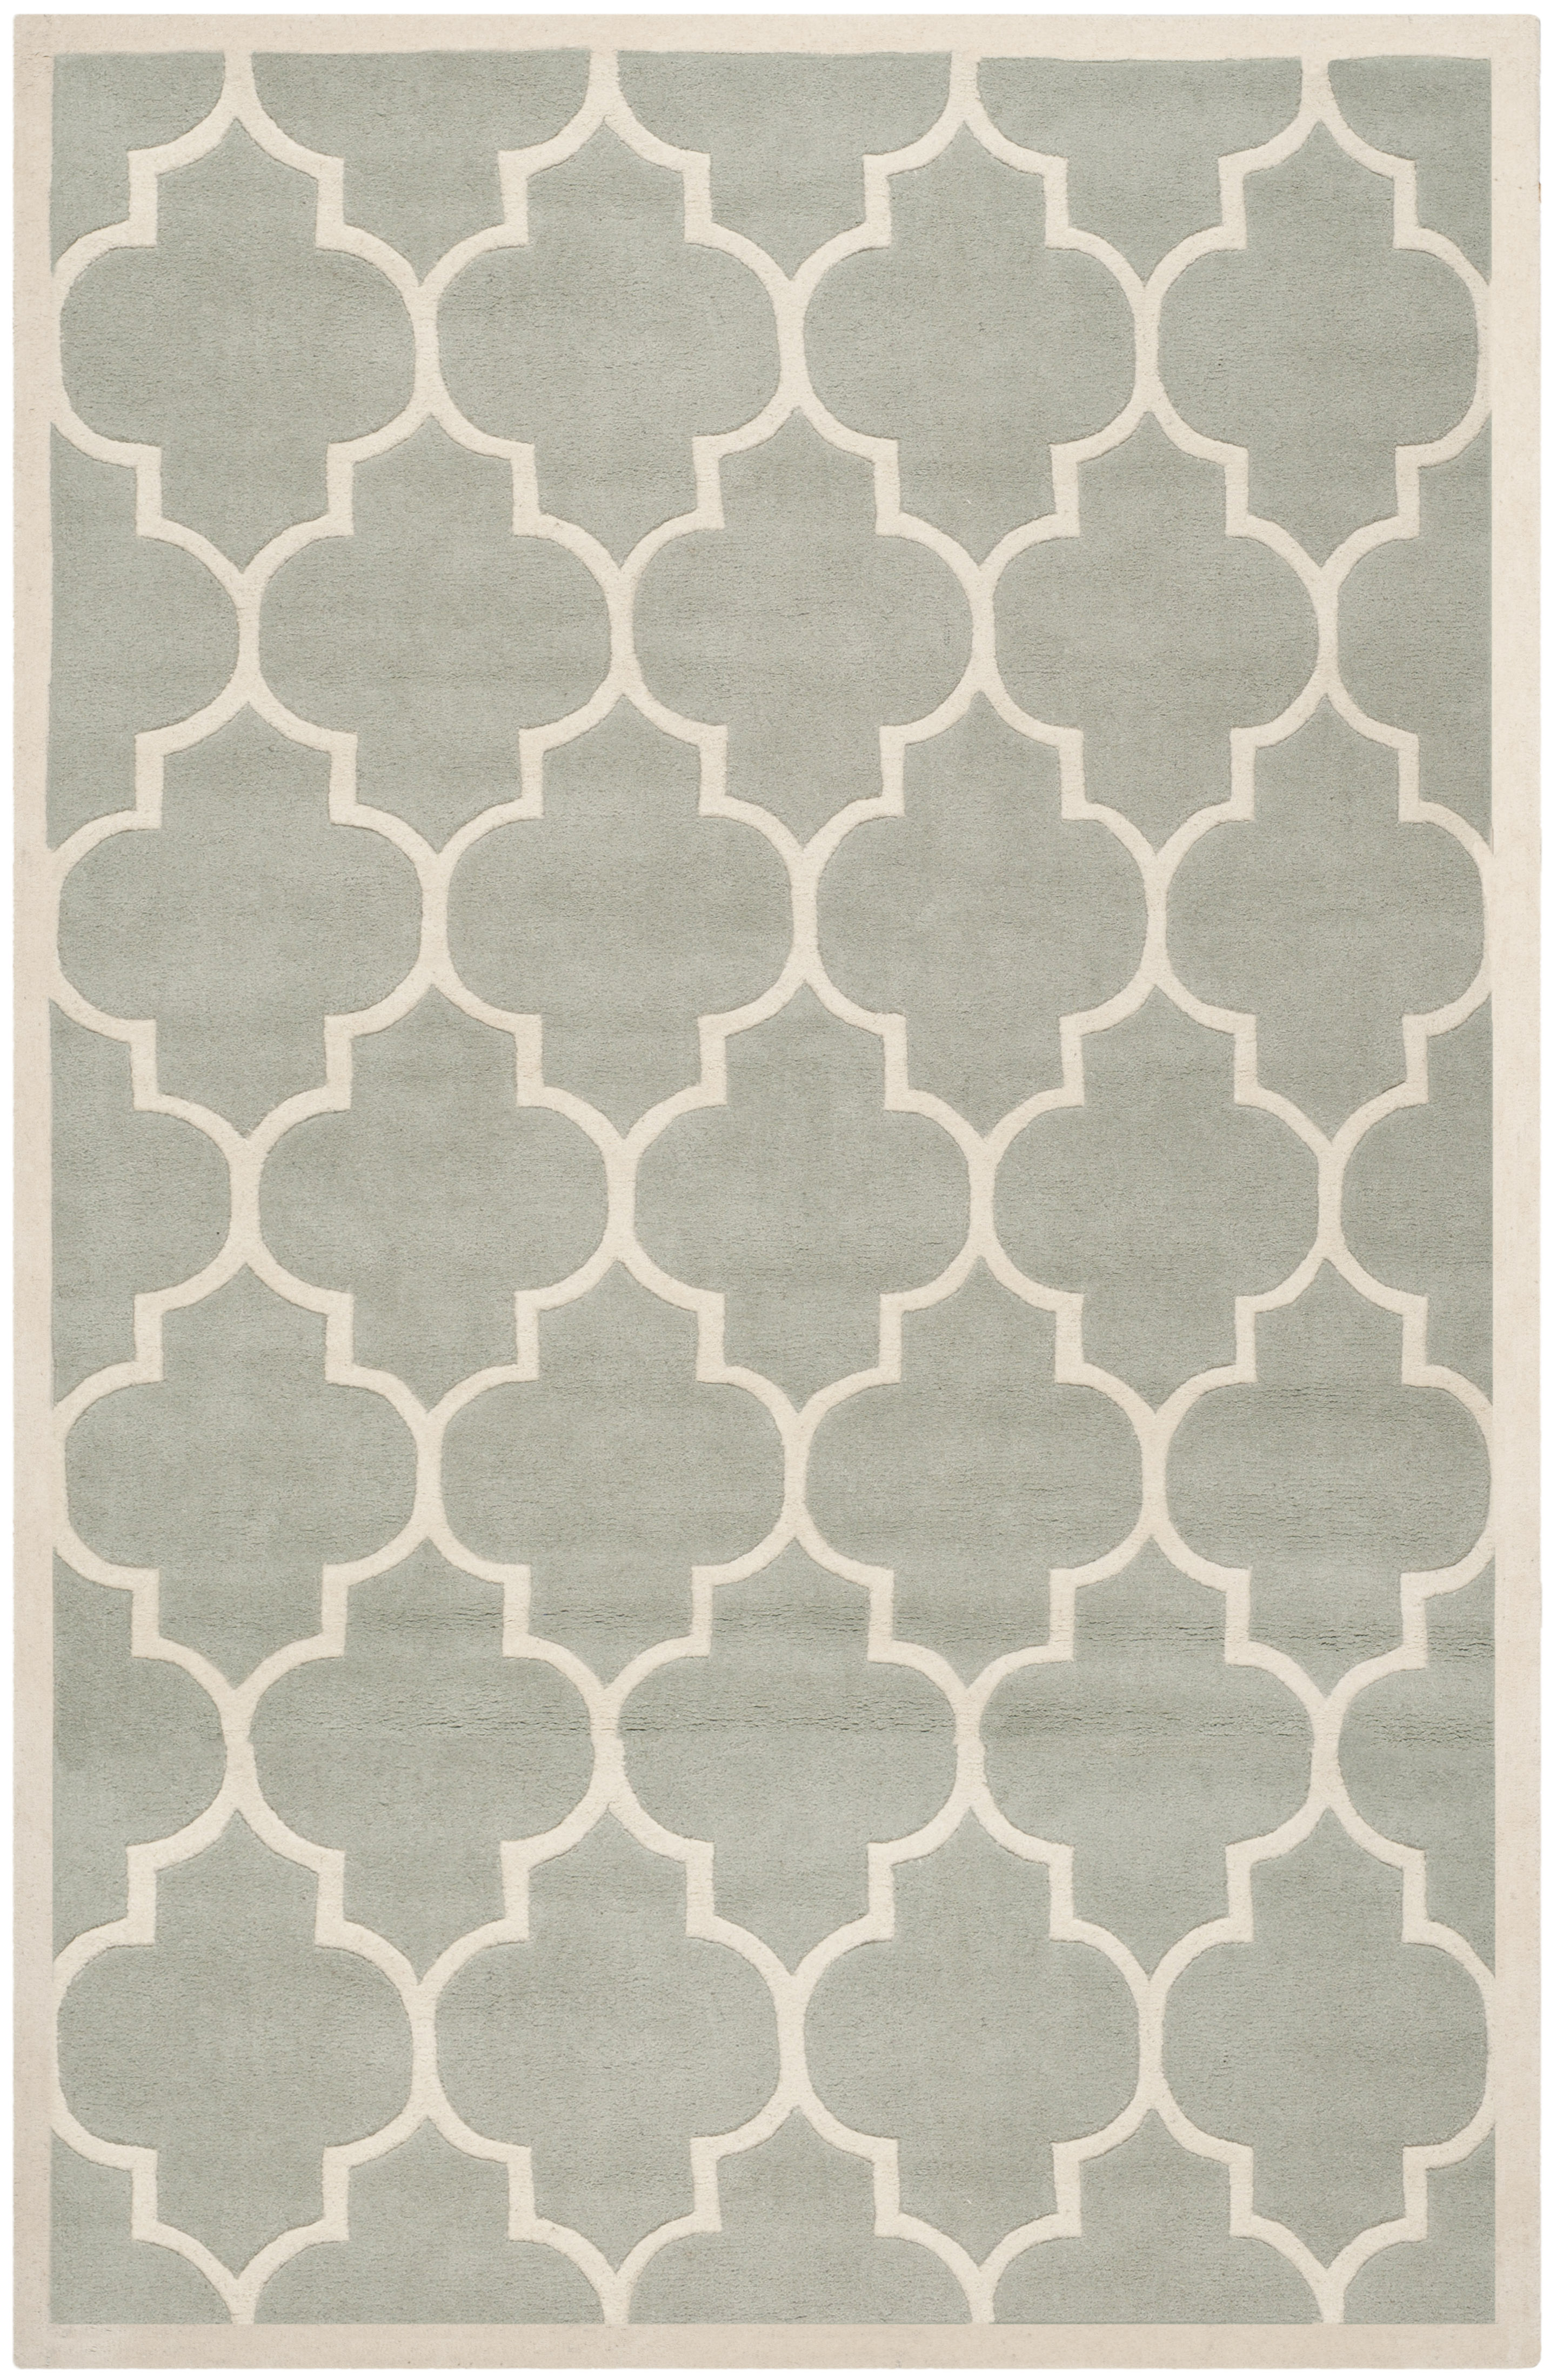 Tapis de salon interieur en gris & ivoire, 183 x 274 cm